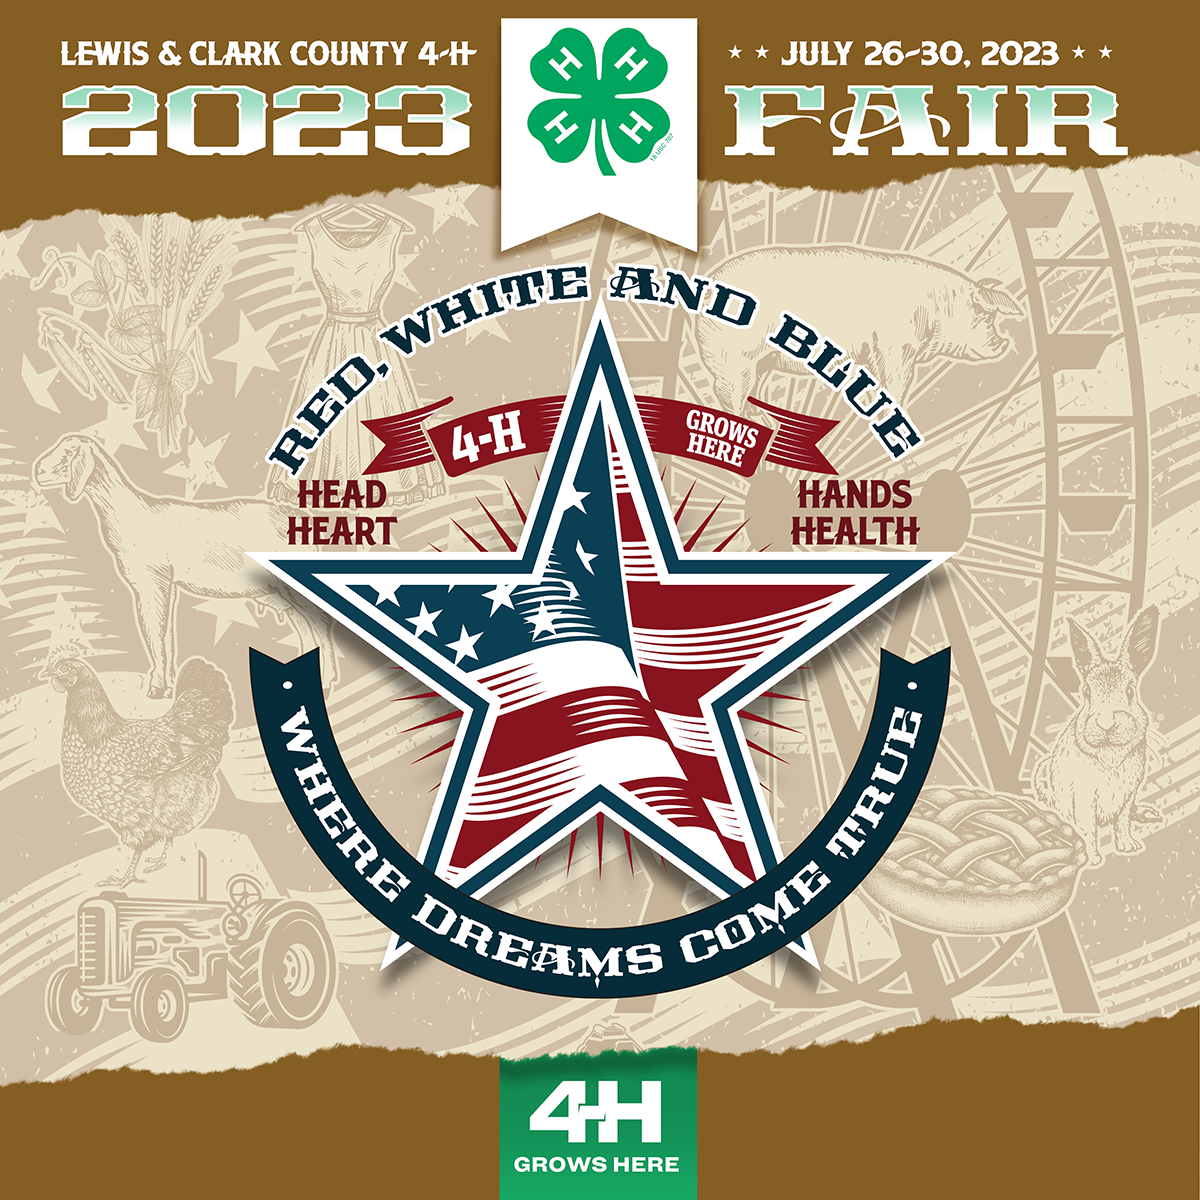 2023 Lewis & Clark County 4-H Fair Logo